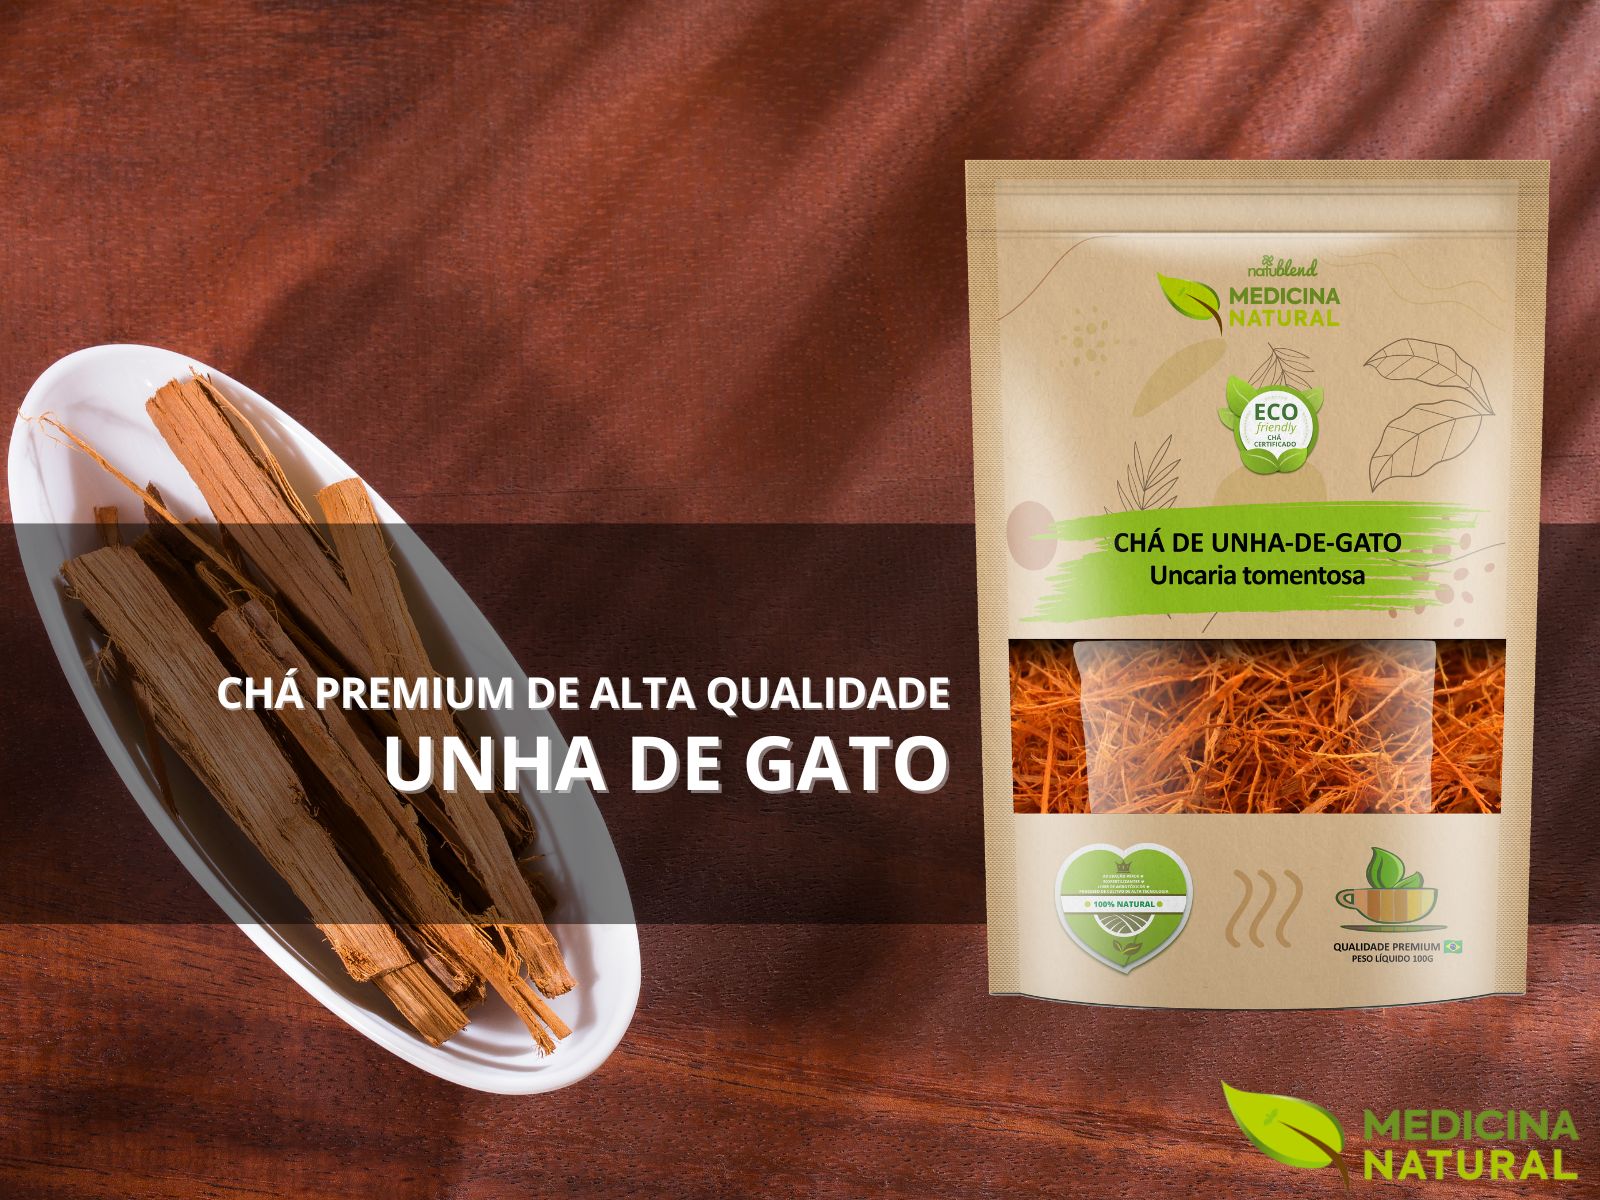 Chá de Unha de Gato – Uncaria tomentosa – Premium